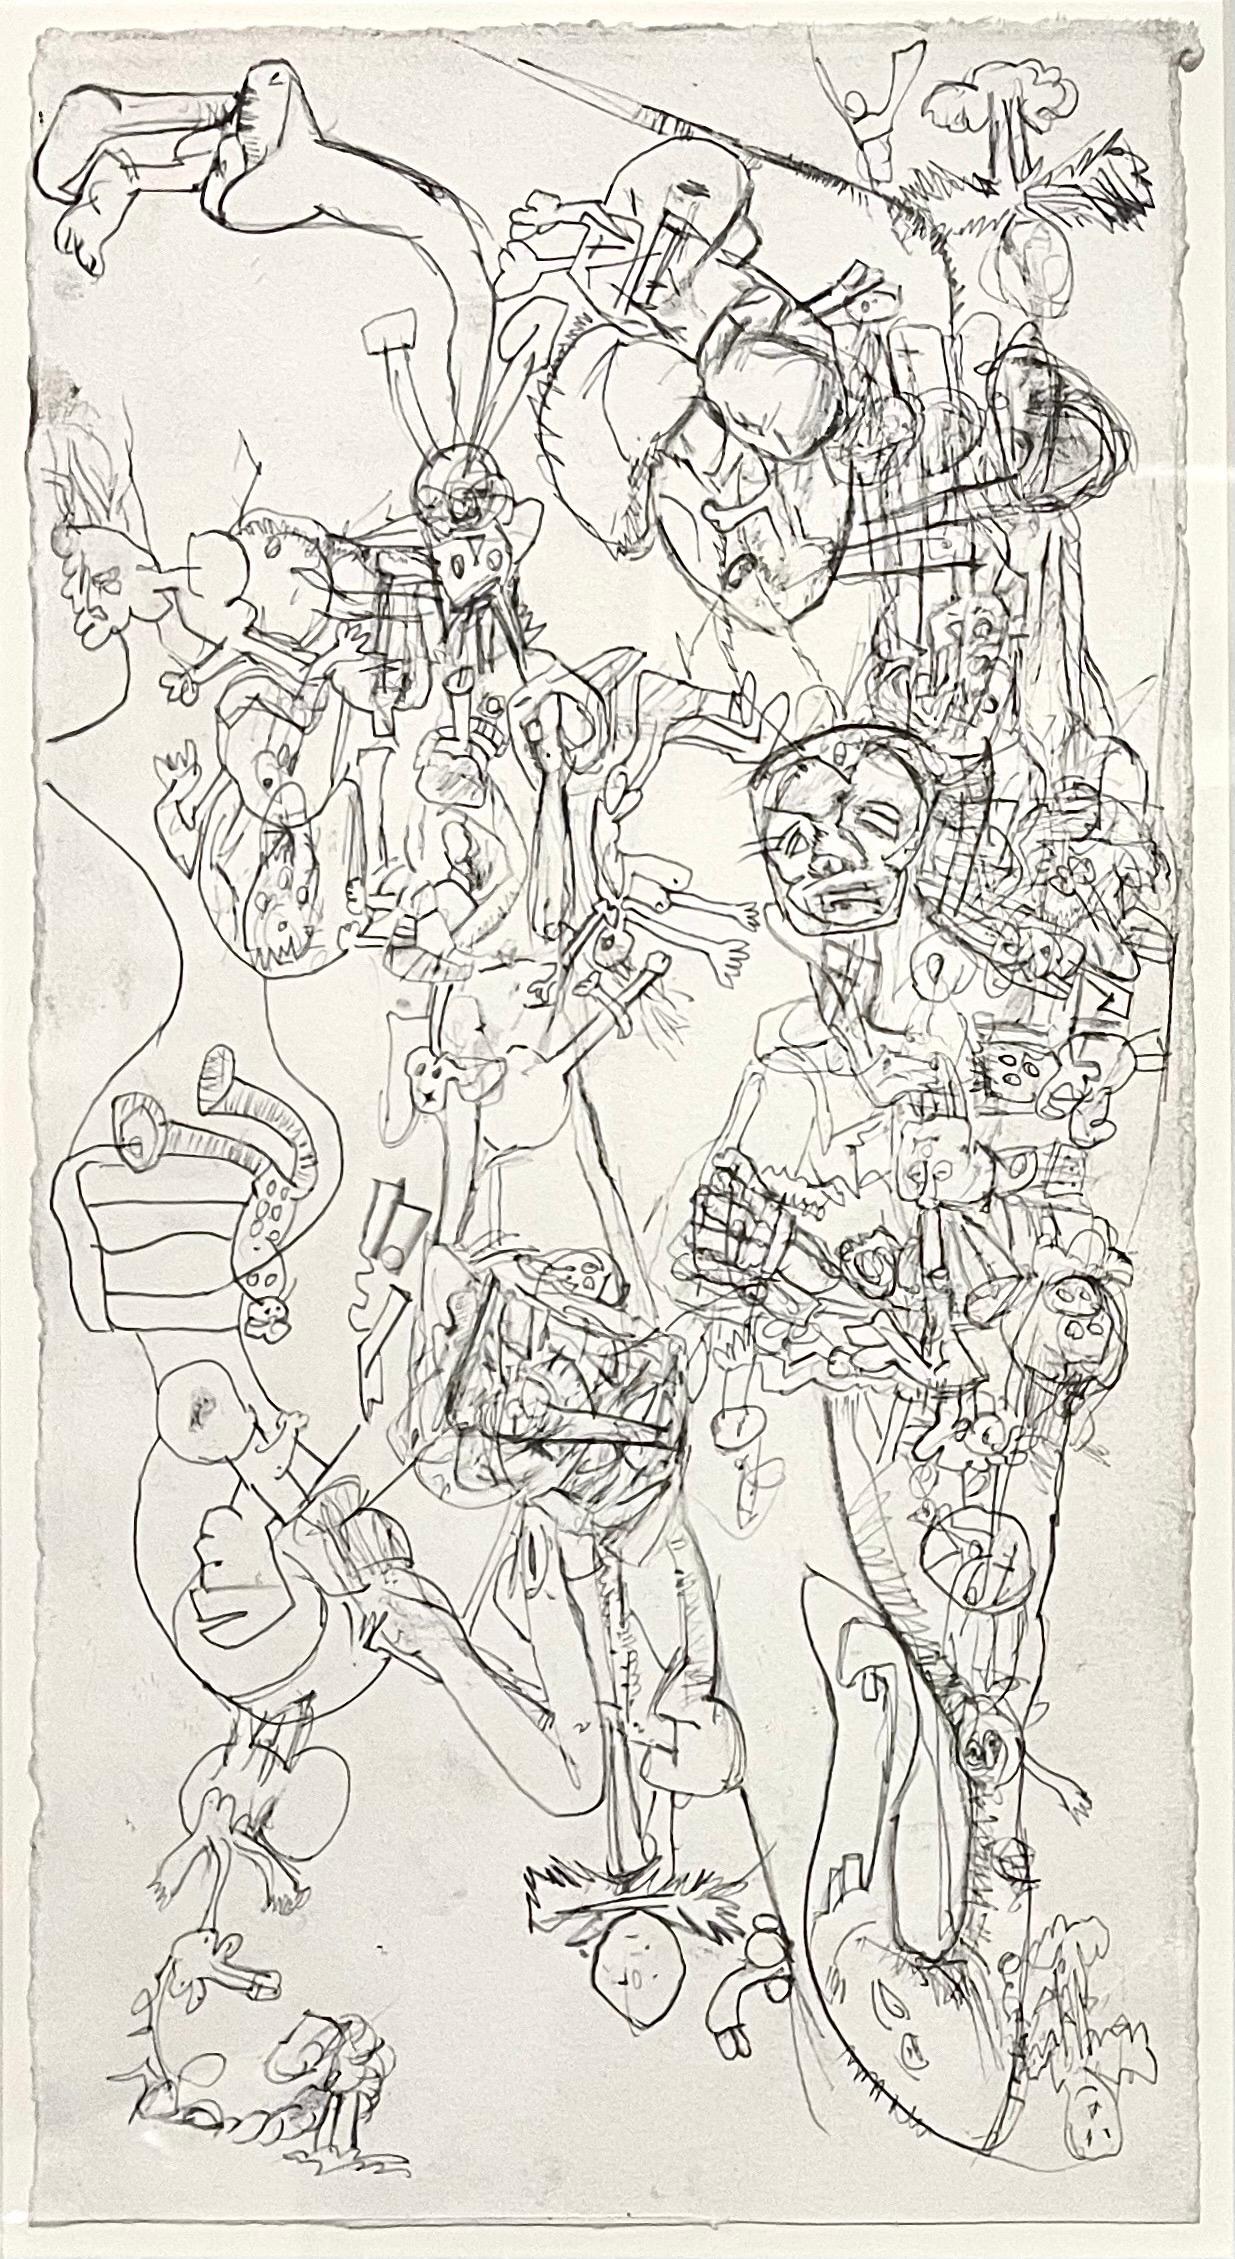 Erwin Pfrang, Deutscher (geb. 1951)
Graphit auf Papier
Partnerbörse (2001) 
Gerahmtes Blatt 21 X 14,5  13.75 X 7.25

Erwin Pfrang (geboren 1951 in München) ist ein deutscher Maler und Grafiker.
Pfrang studierte von 1974-79 an der Akademie der